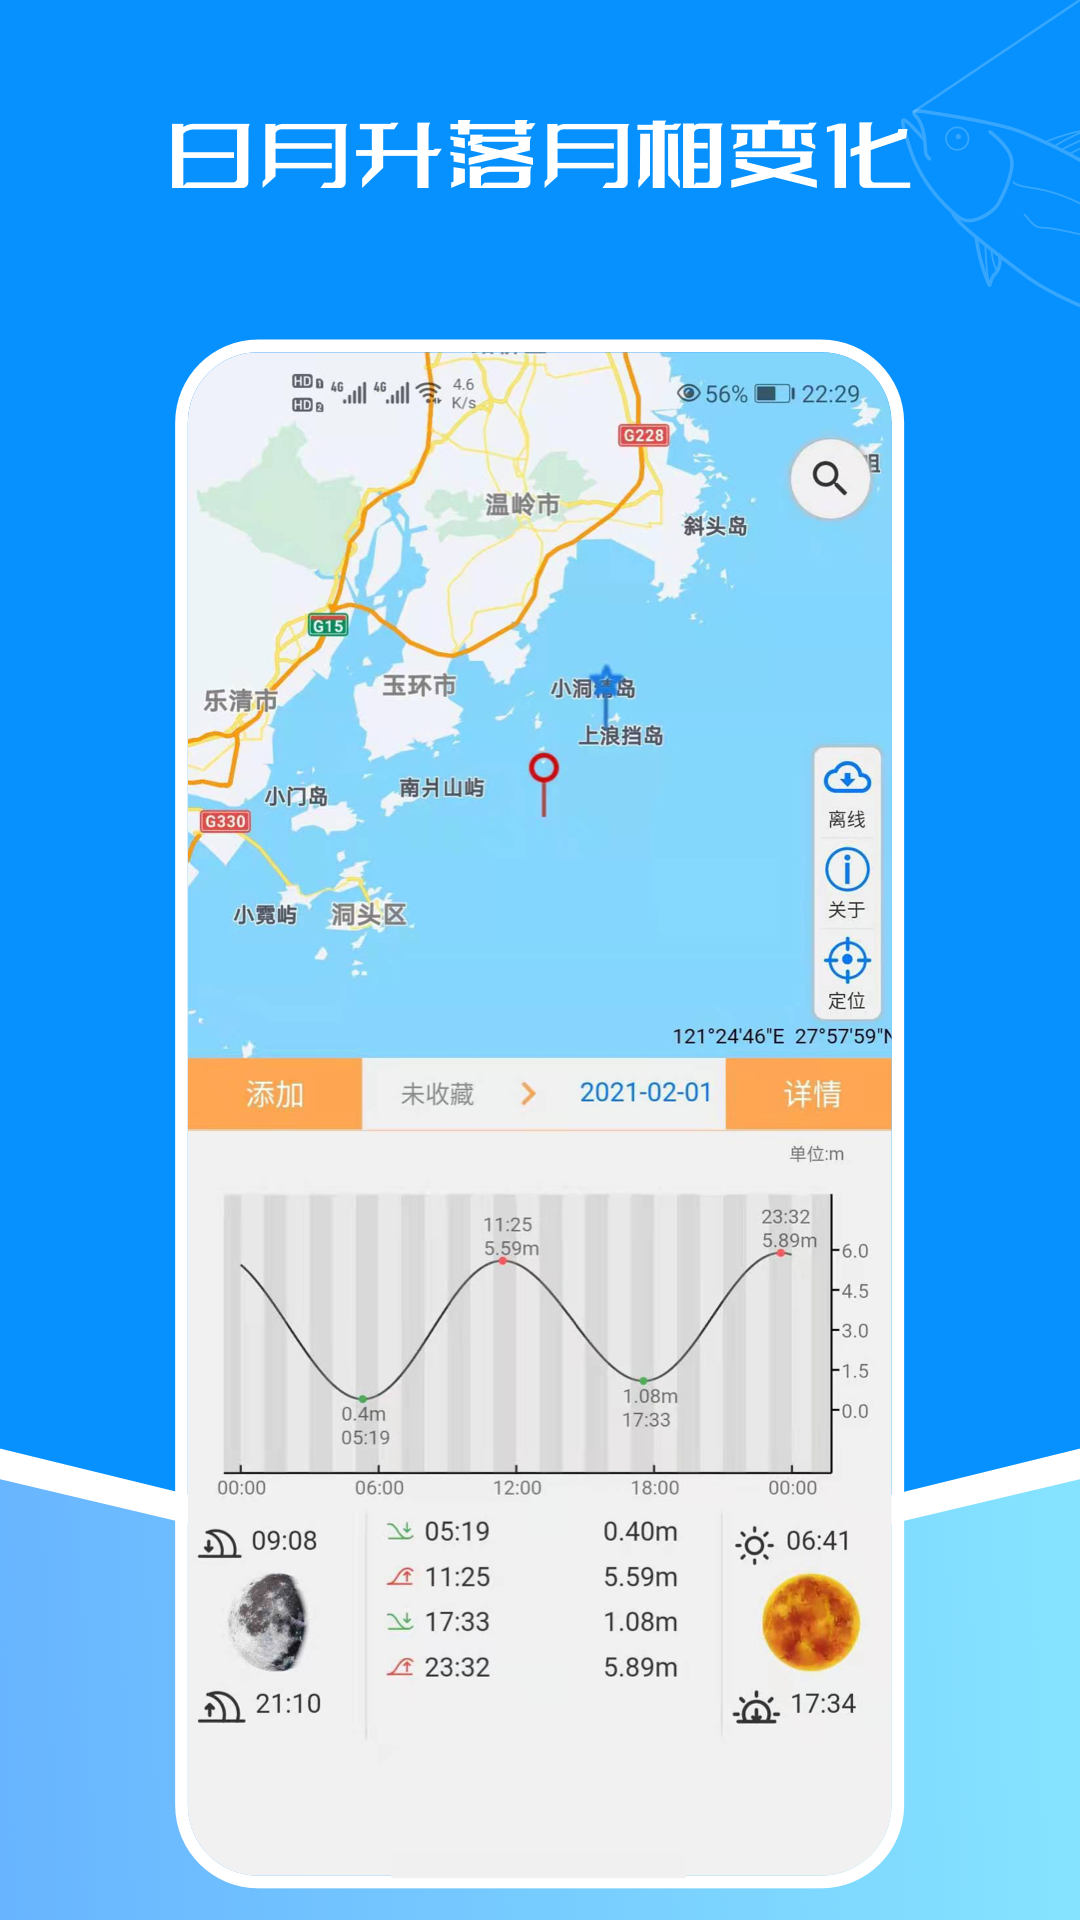 潮汐表南昌app平台开发公司